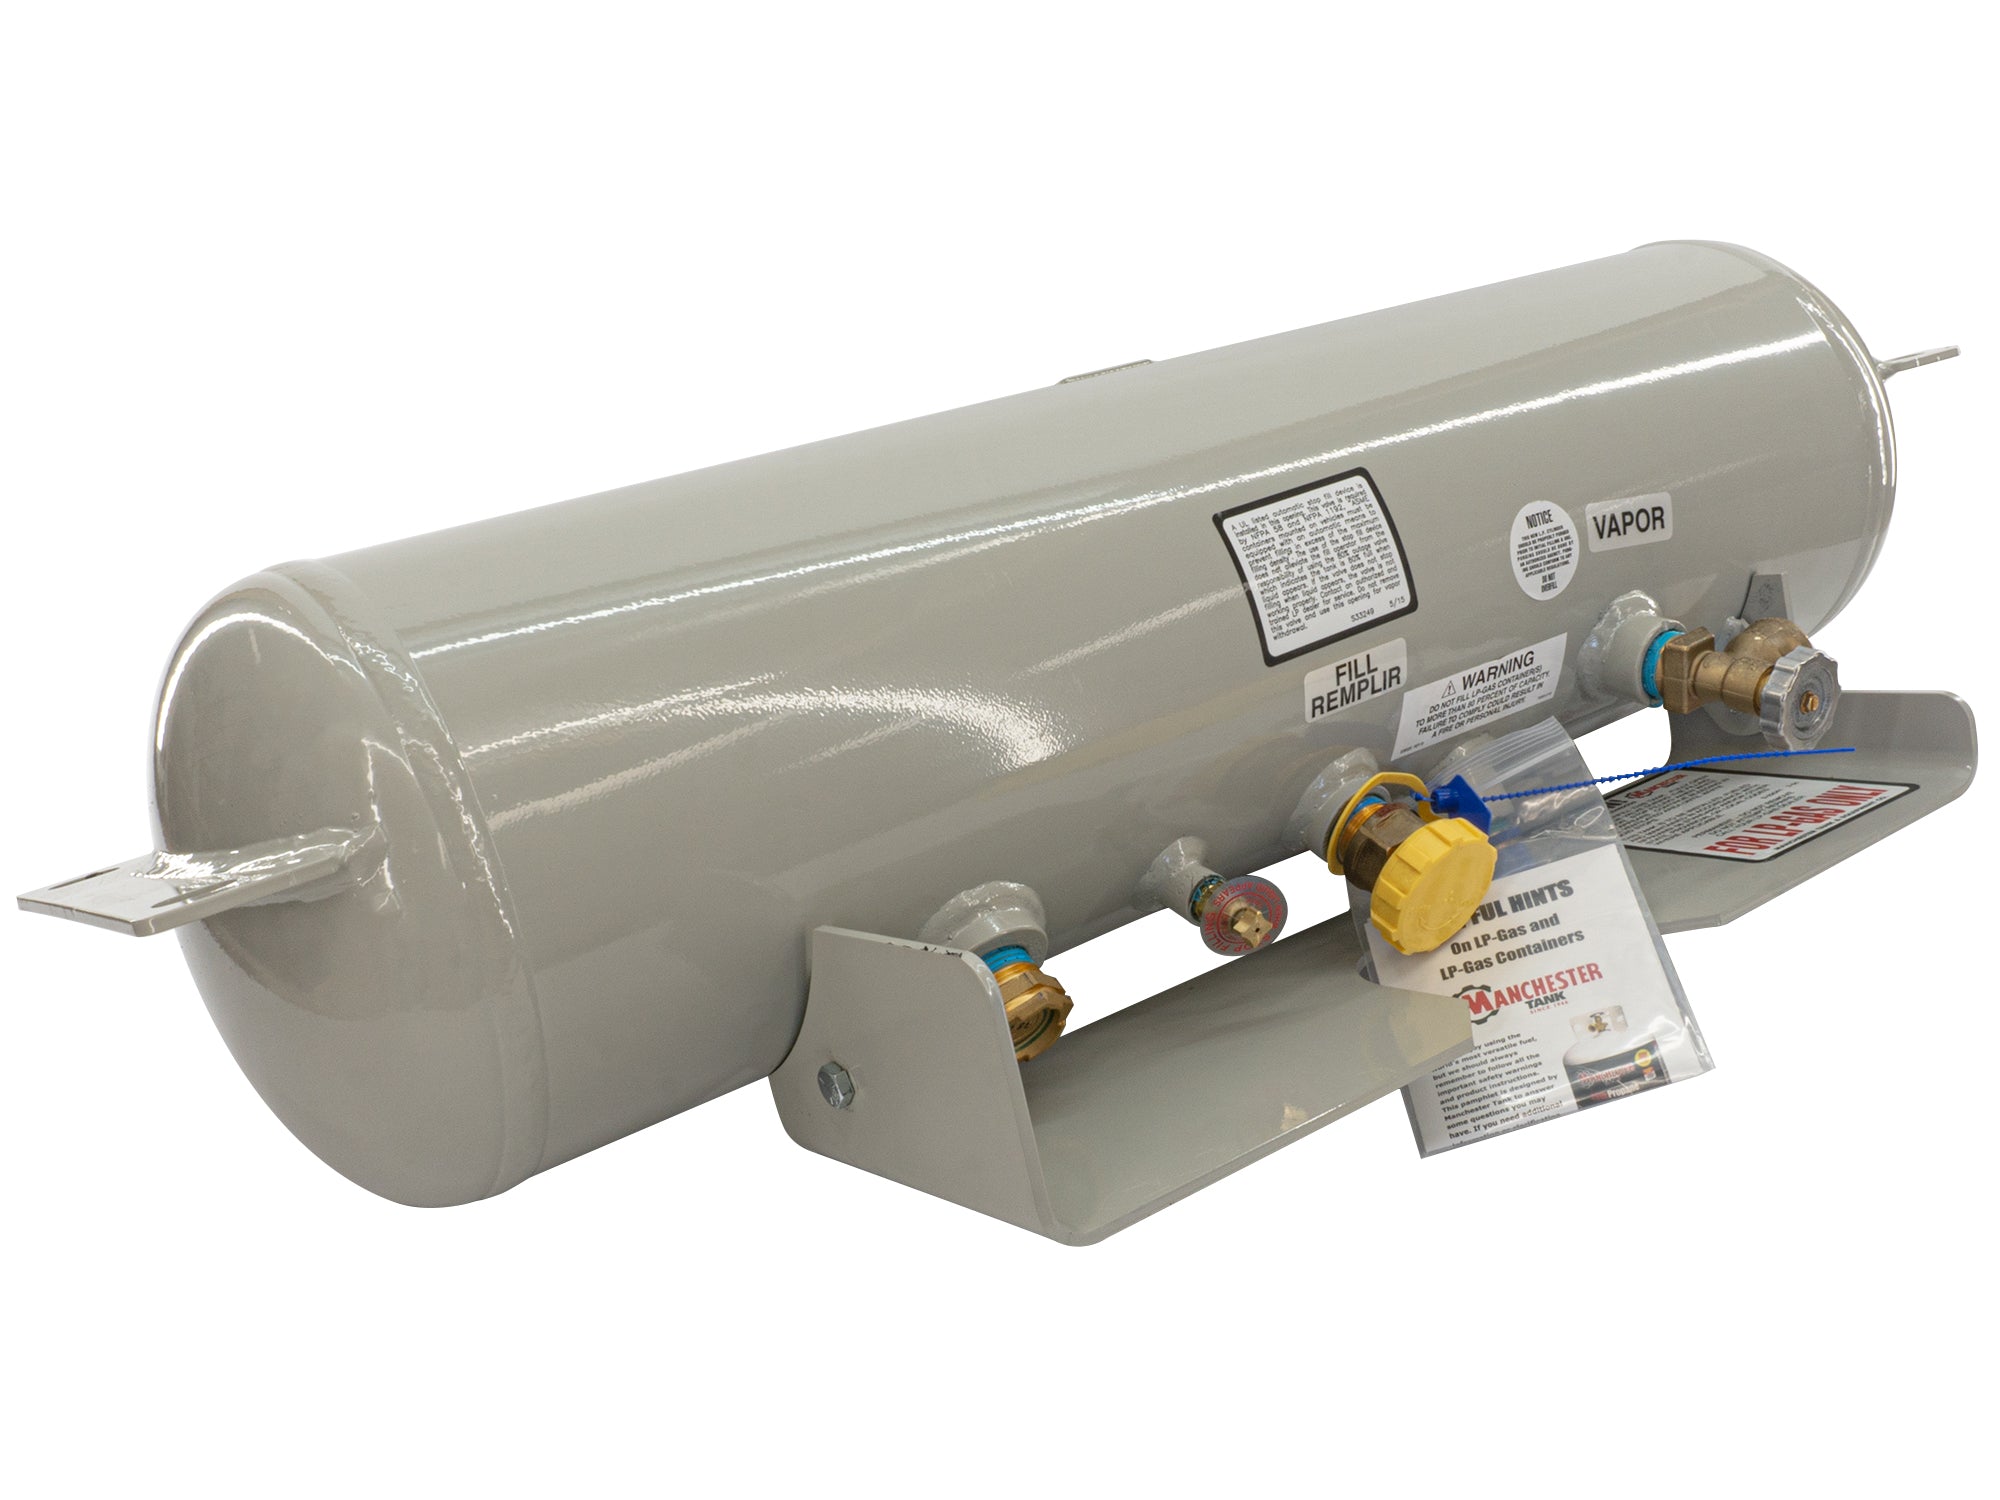 Gas Cylinder Level Sensor  Propane Tank level indicator - Thincke